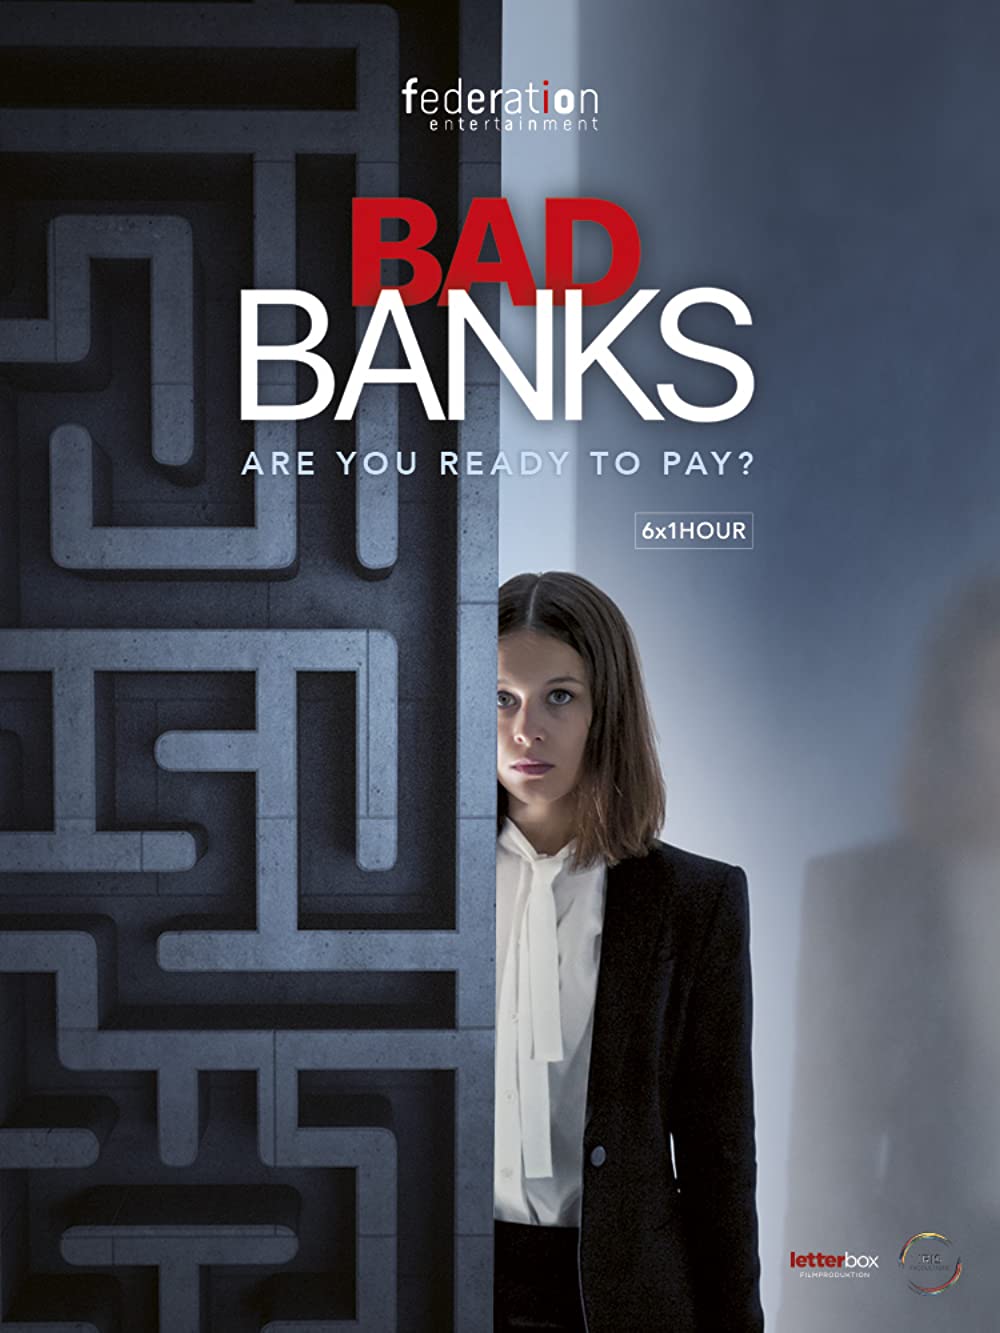 Filmbeschreibung zu Bad Banks